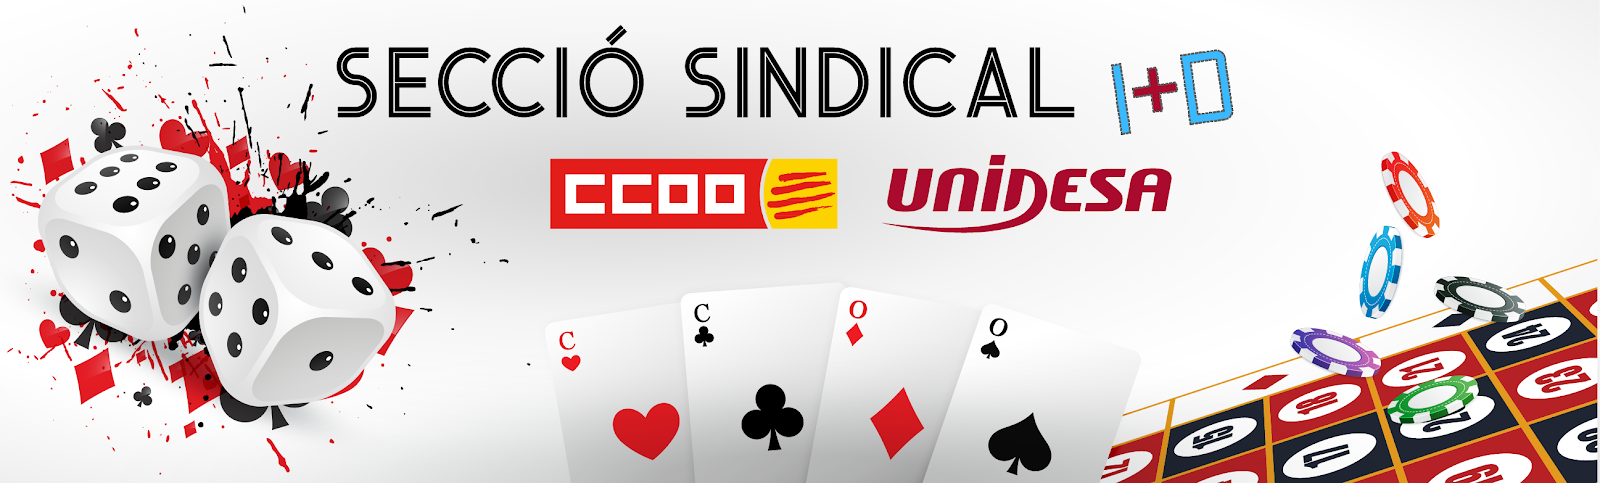 Secció Sindical CCOO Unidesa I+D